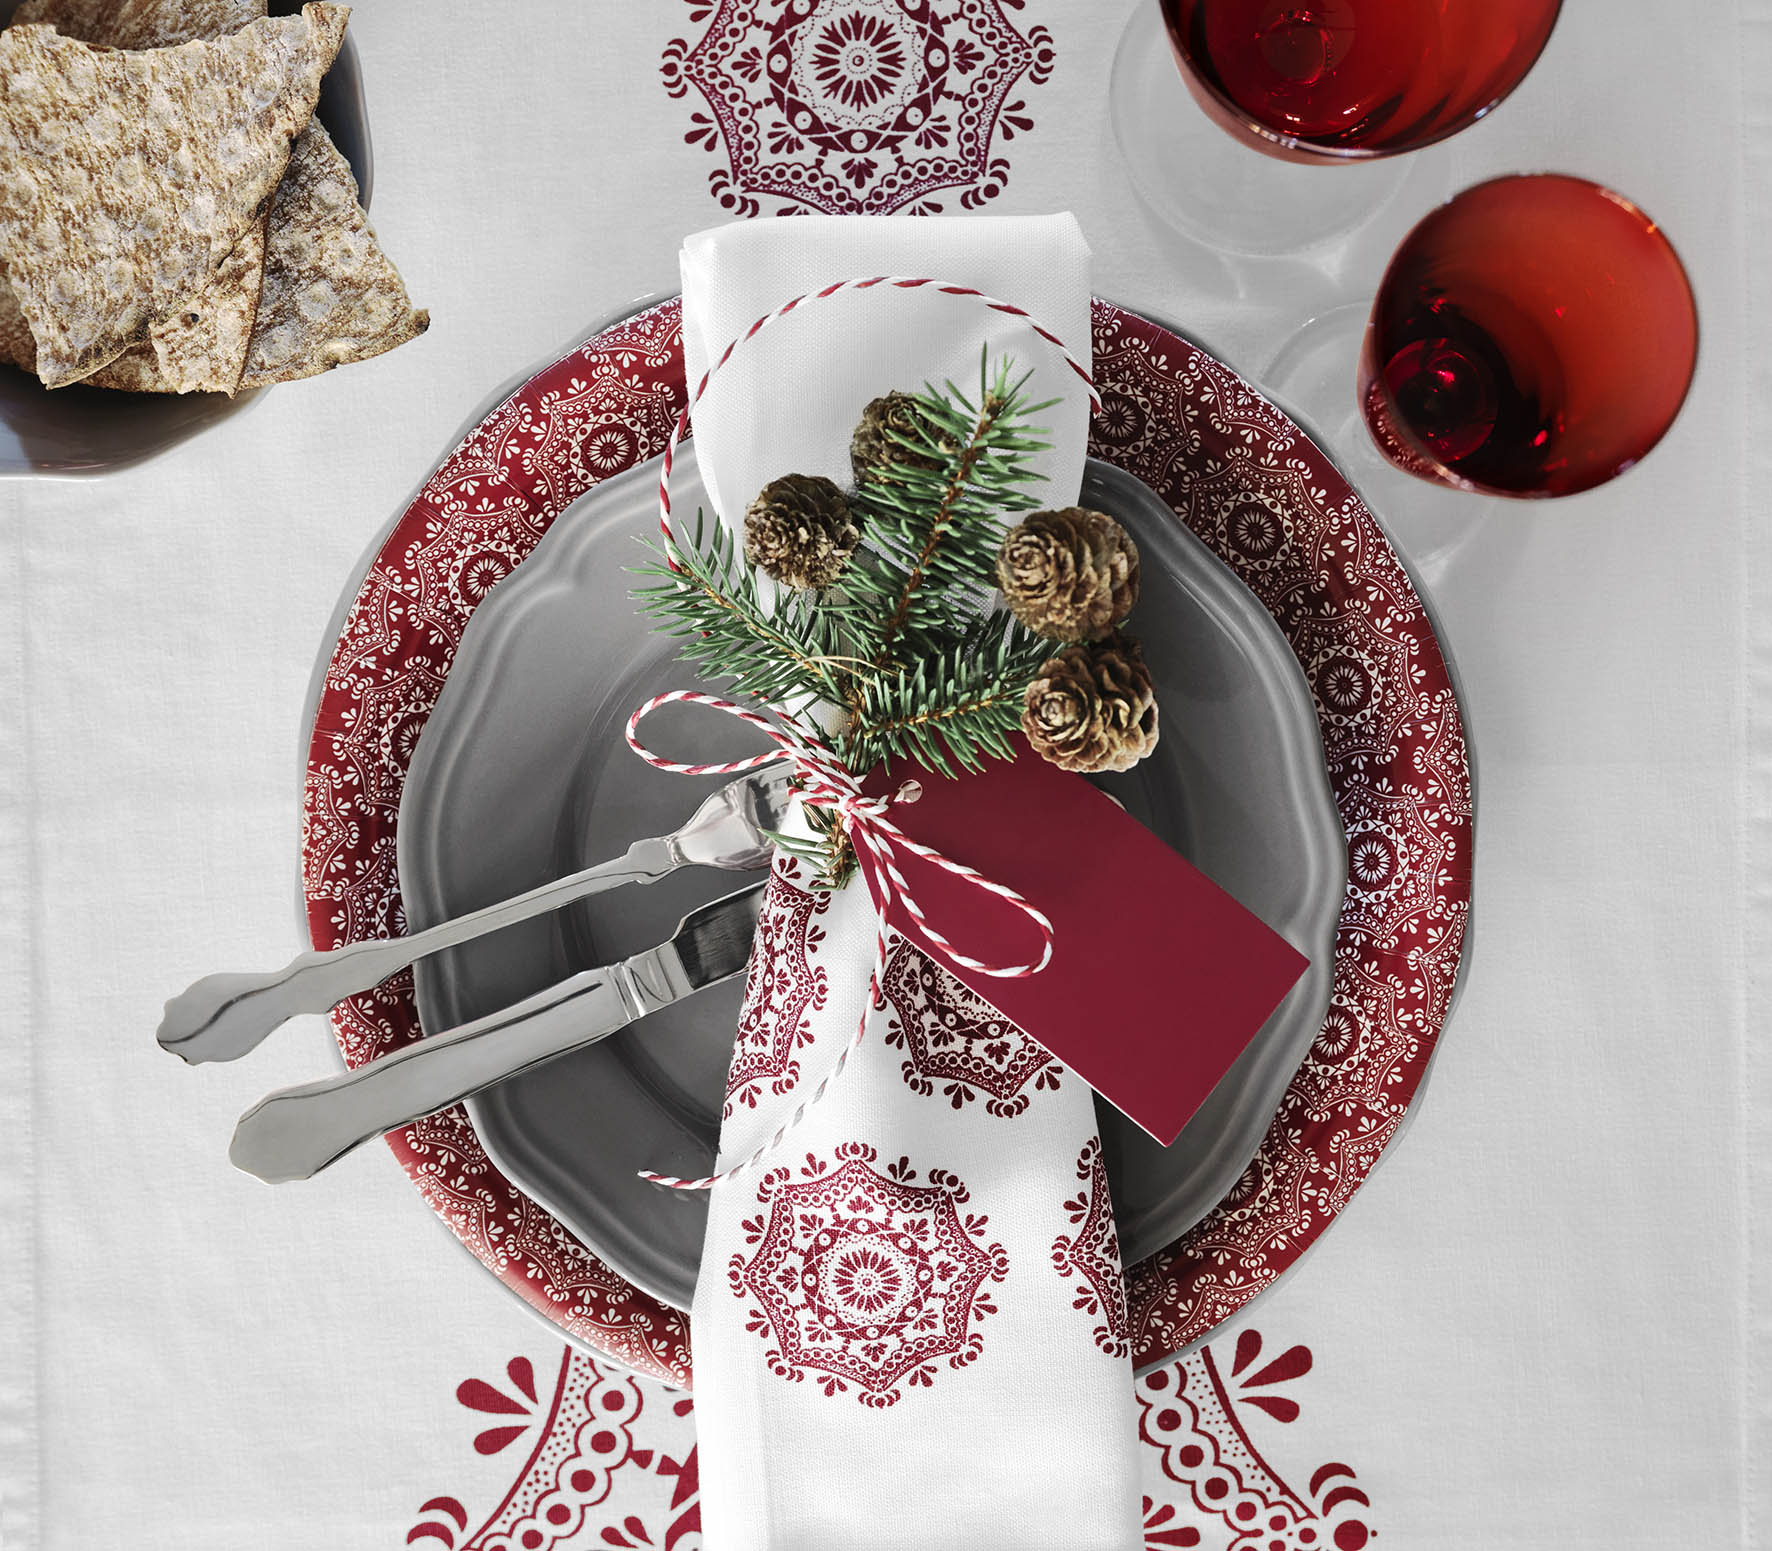 Kerts 2015. Met de nostalgische tafelkleden en bijpassend servies uit de VINTER 2015 collectie is de tafel meteen klaar voor een sfeervol kerstdiner. Ikea